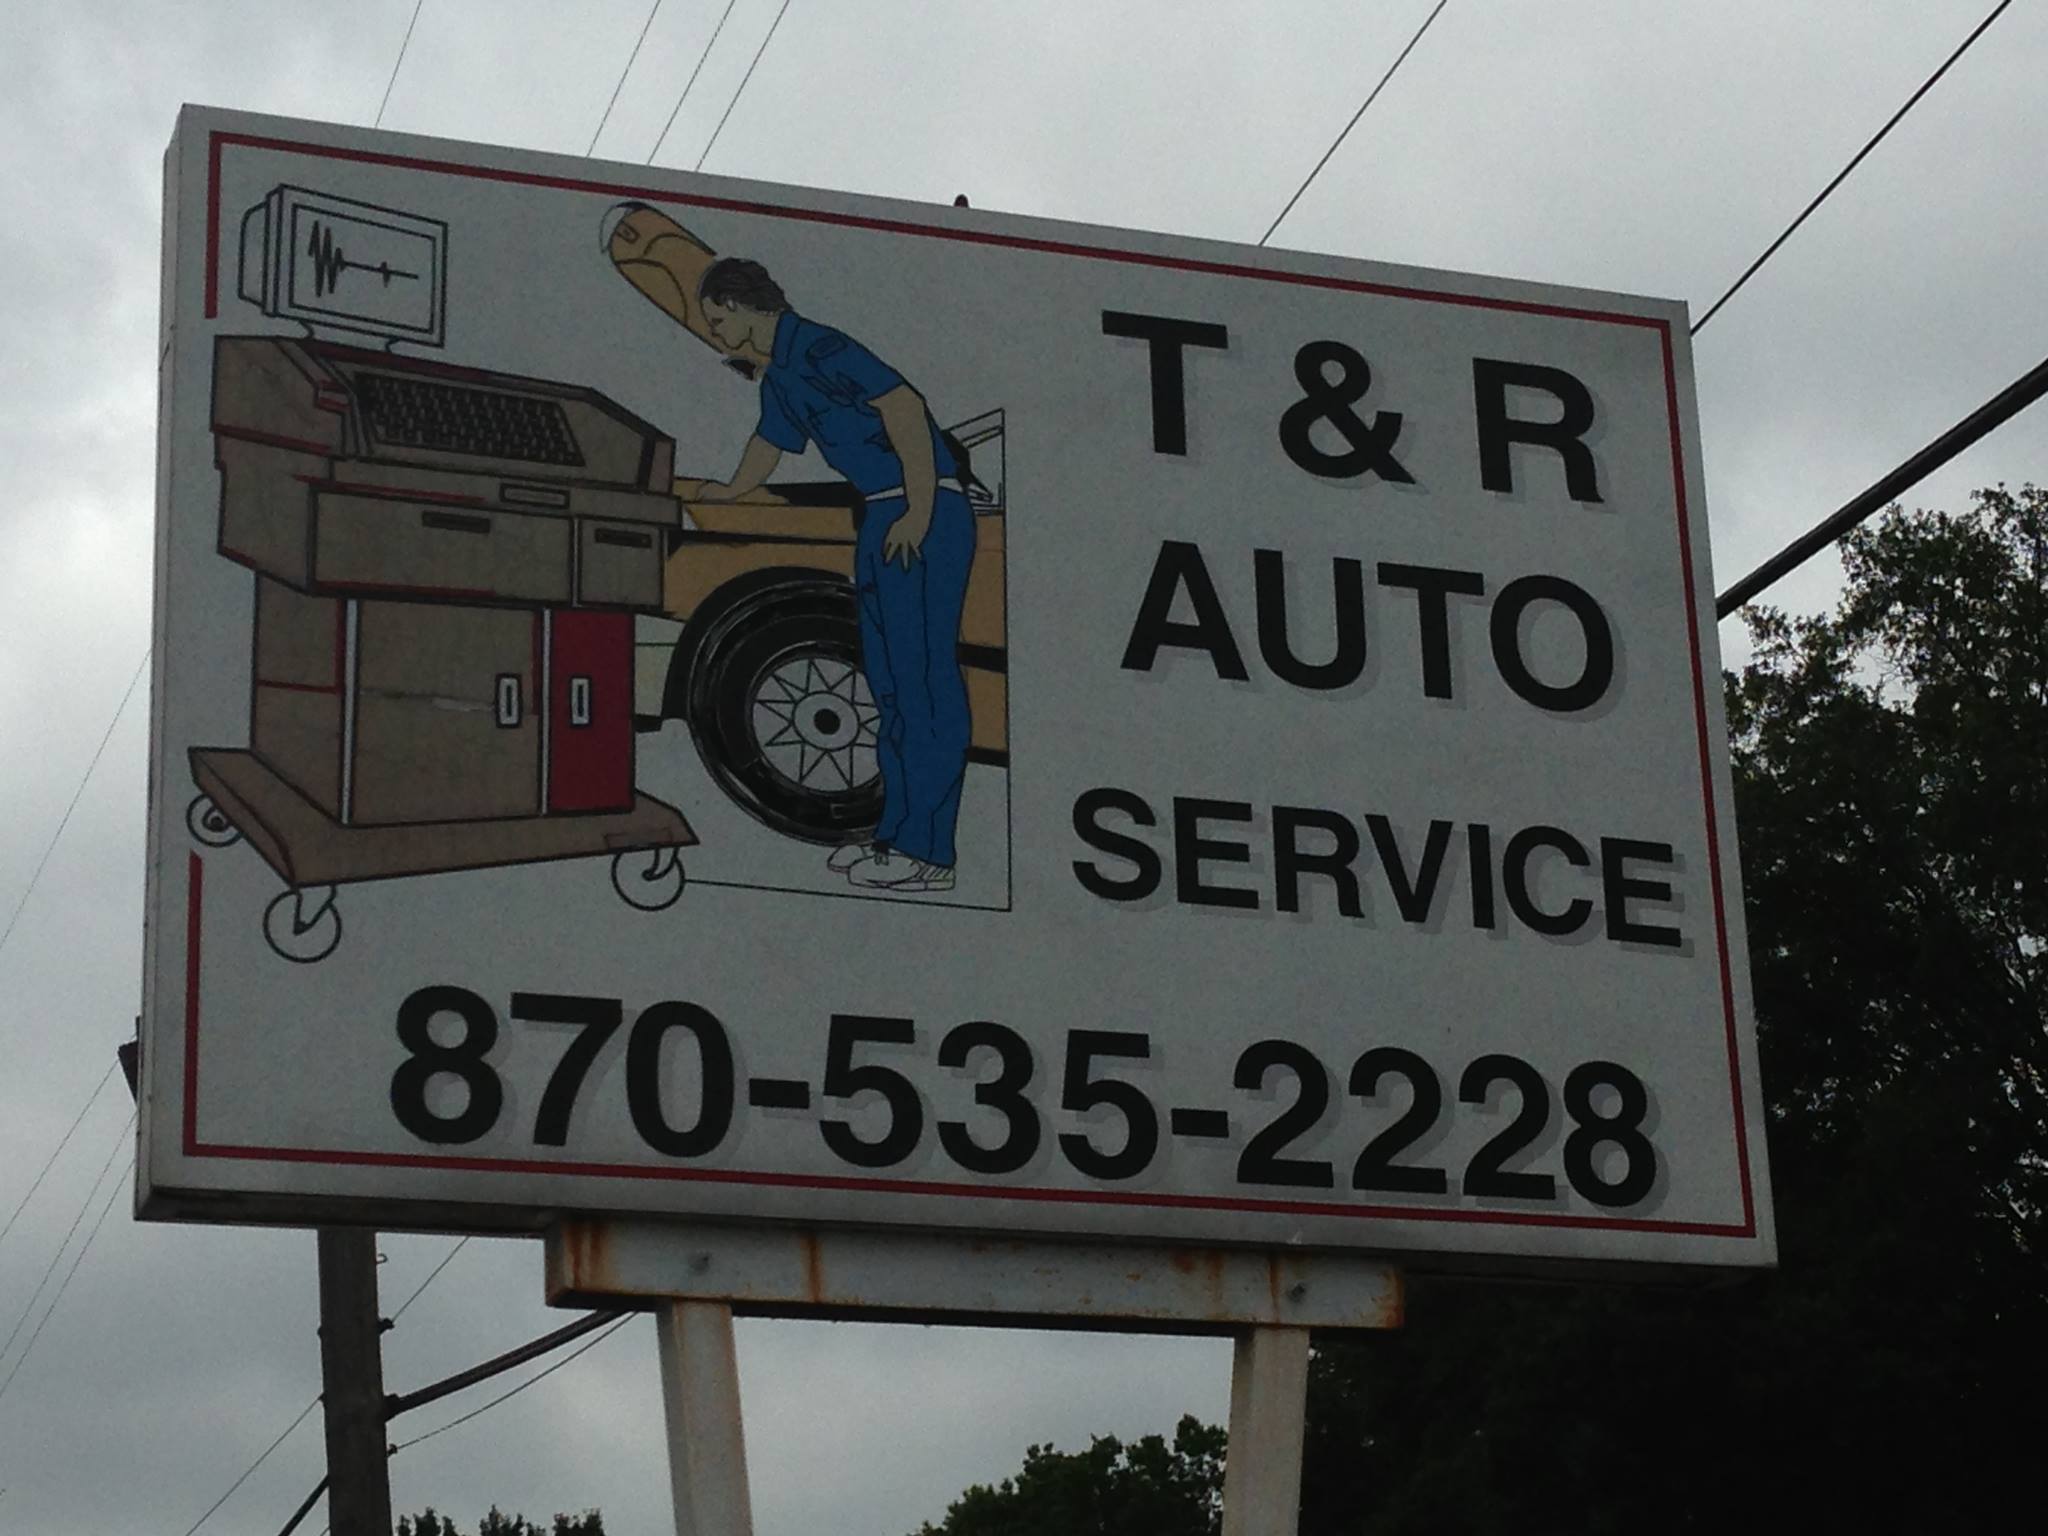 T & R Auto Sales & Services